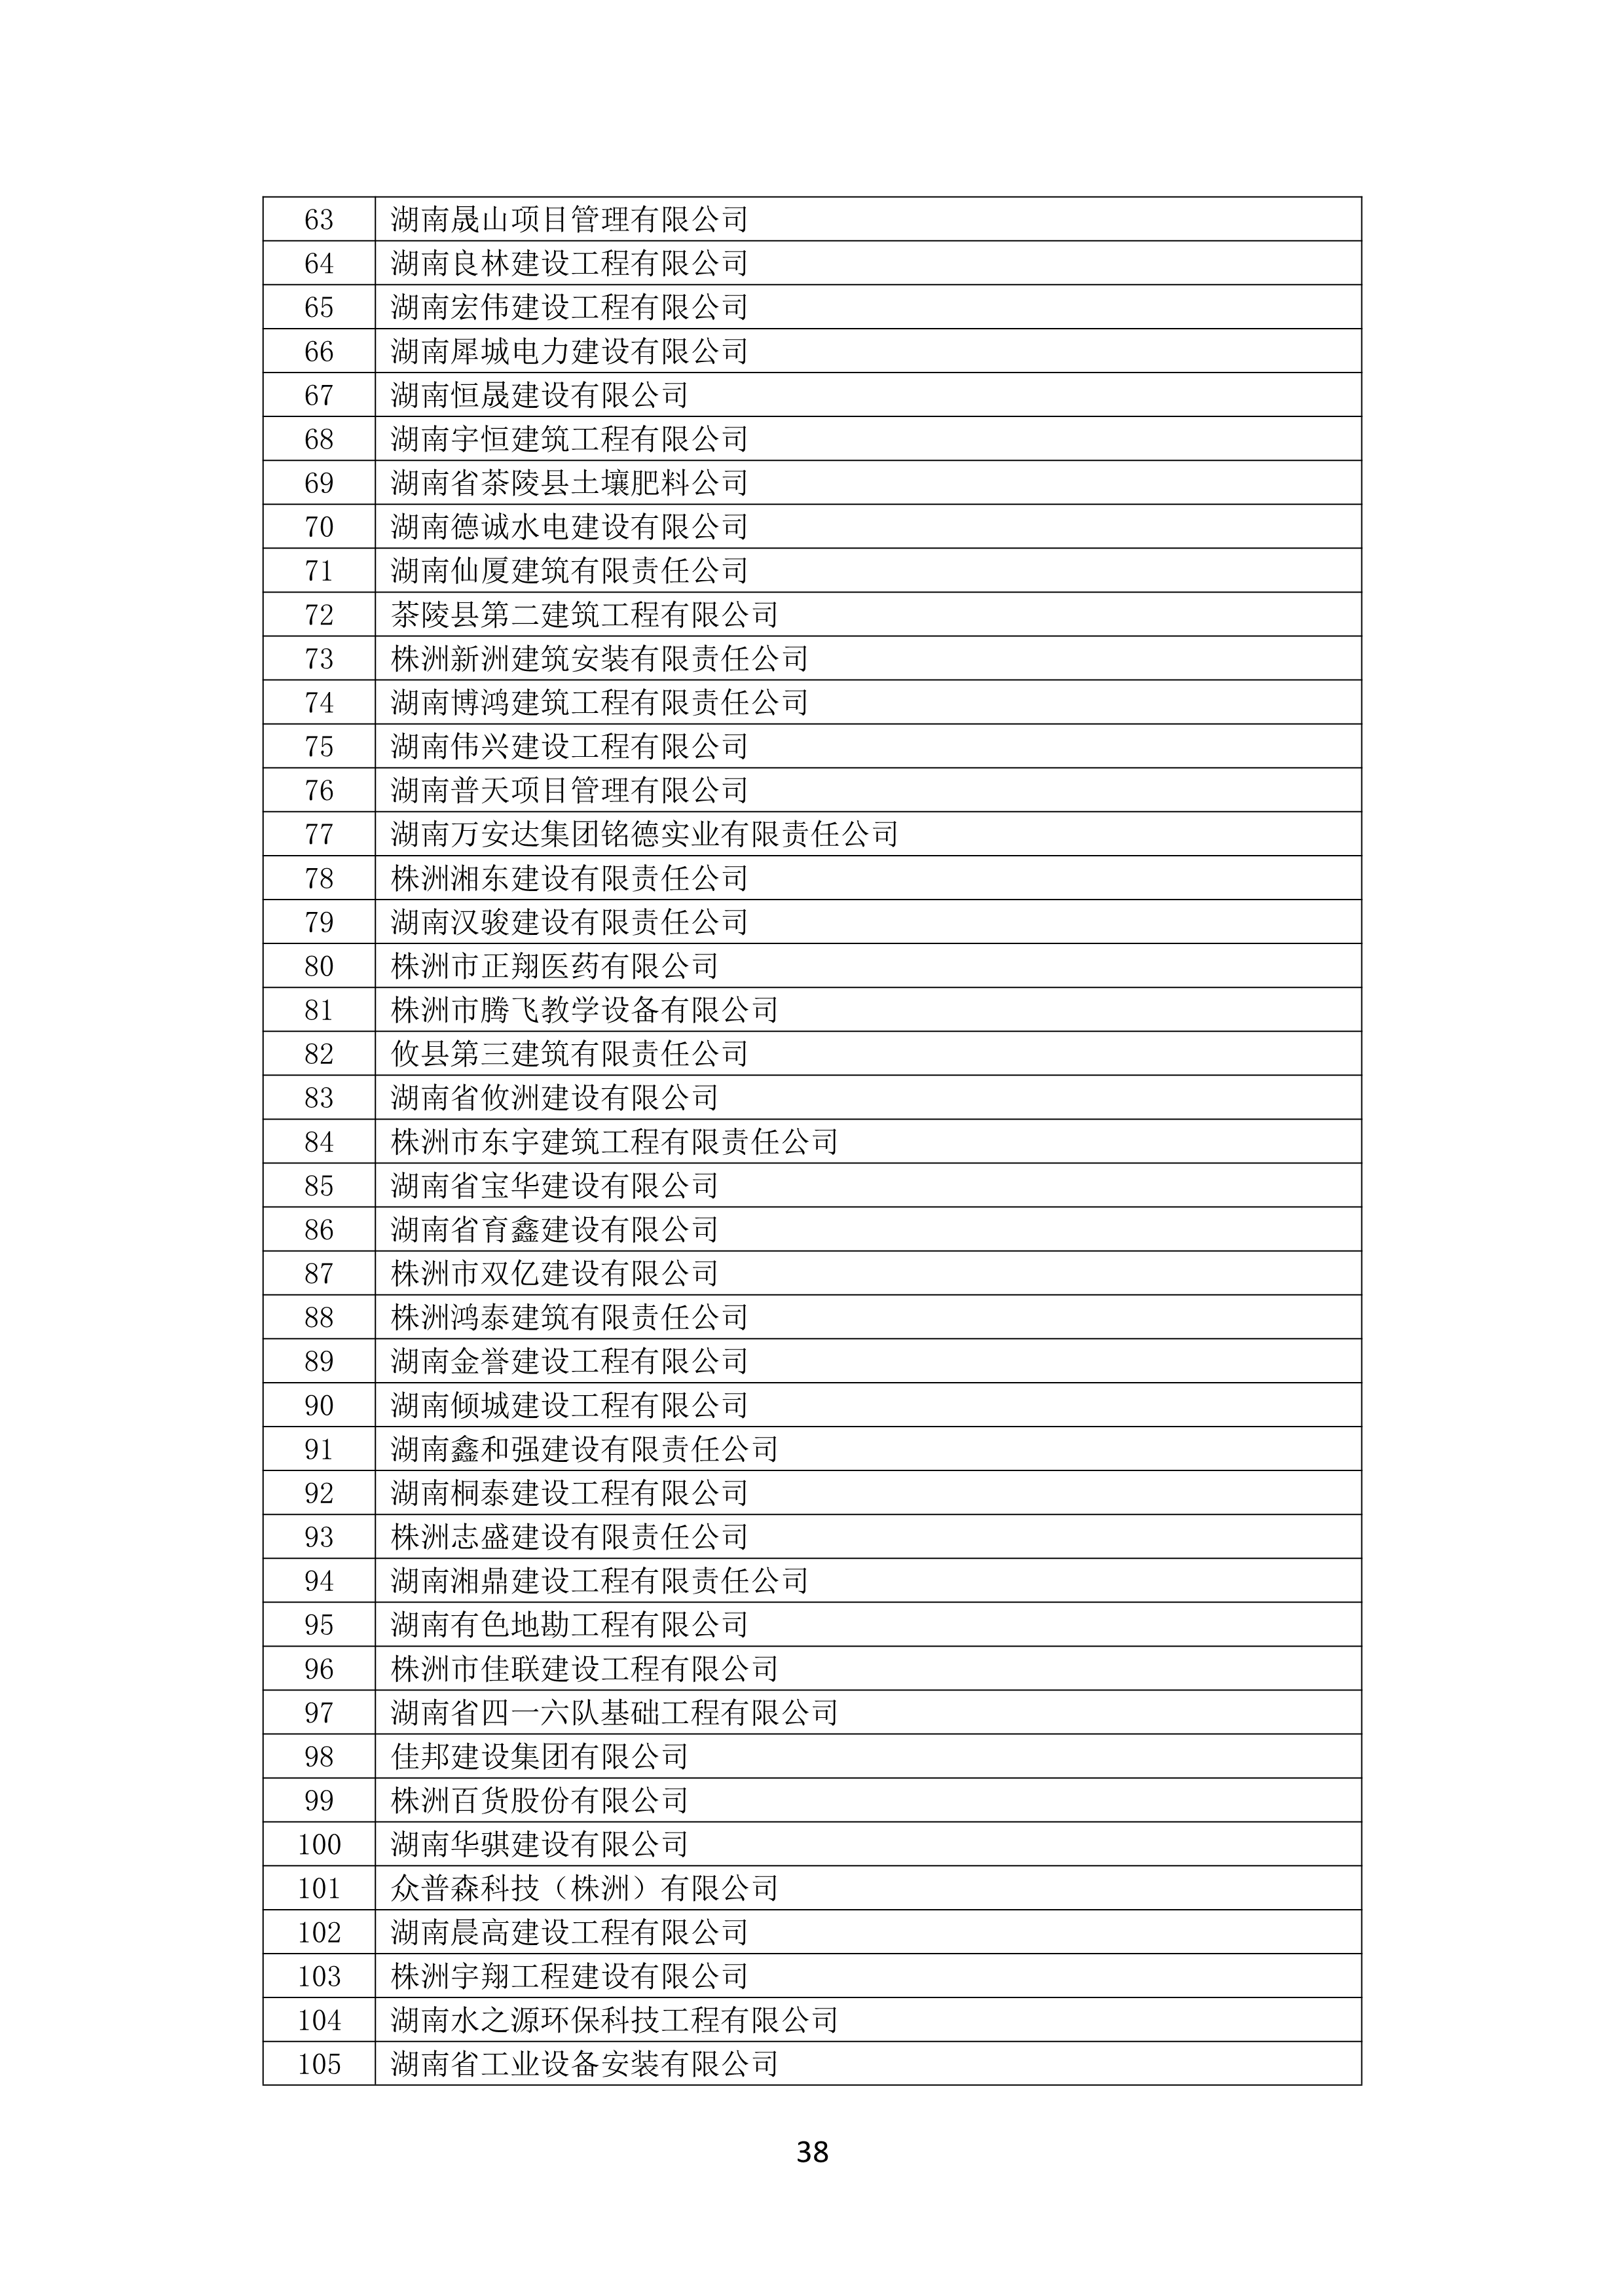 2021 年(nián)度湖南省守合同重信用企業名單_39.png